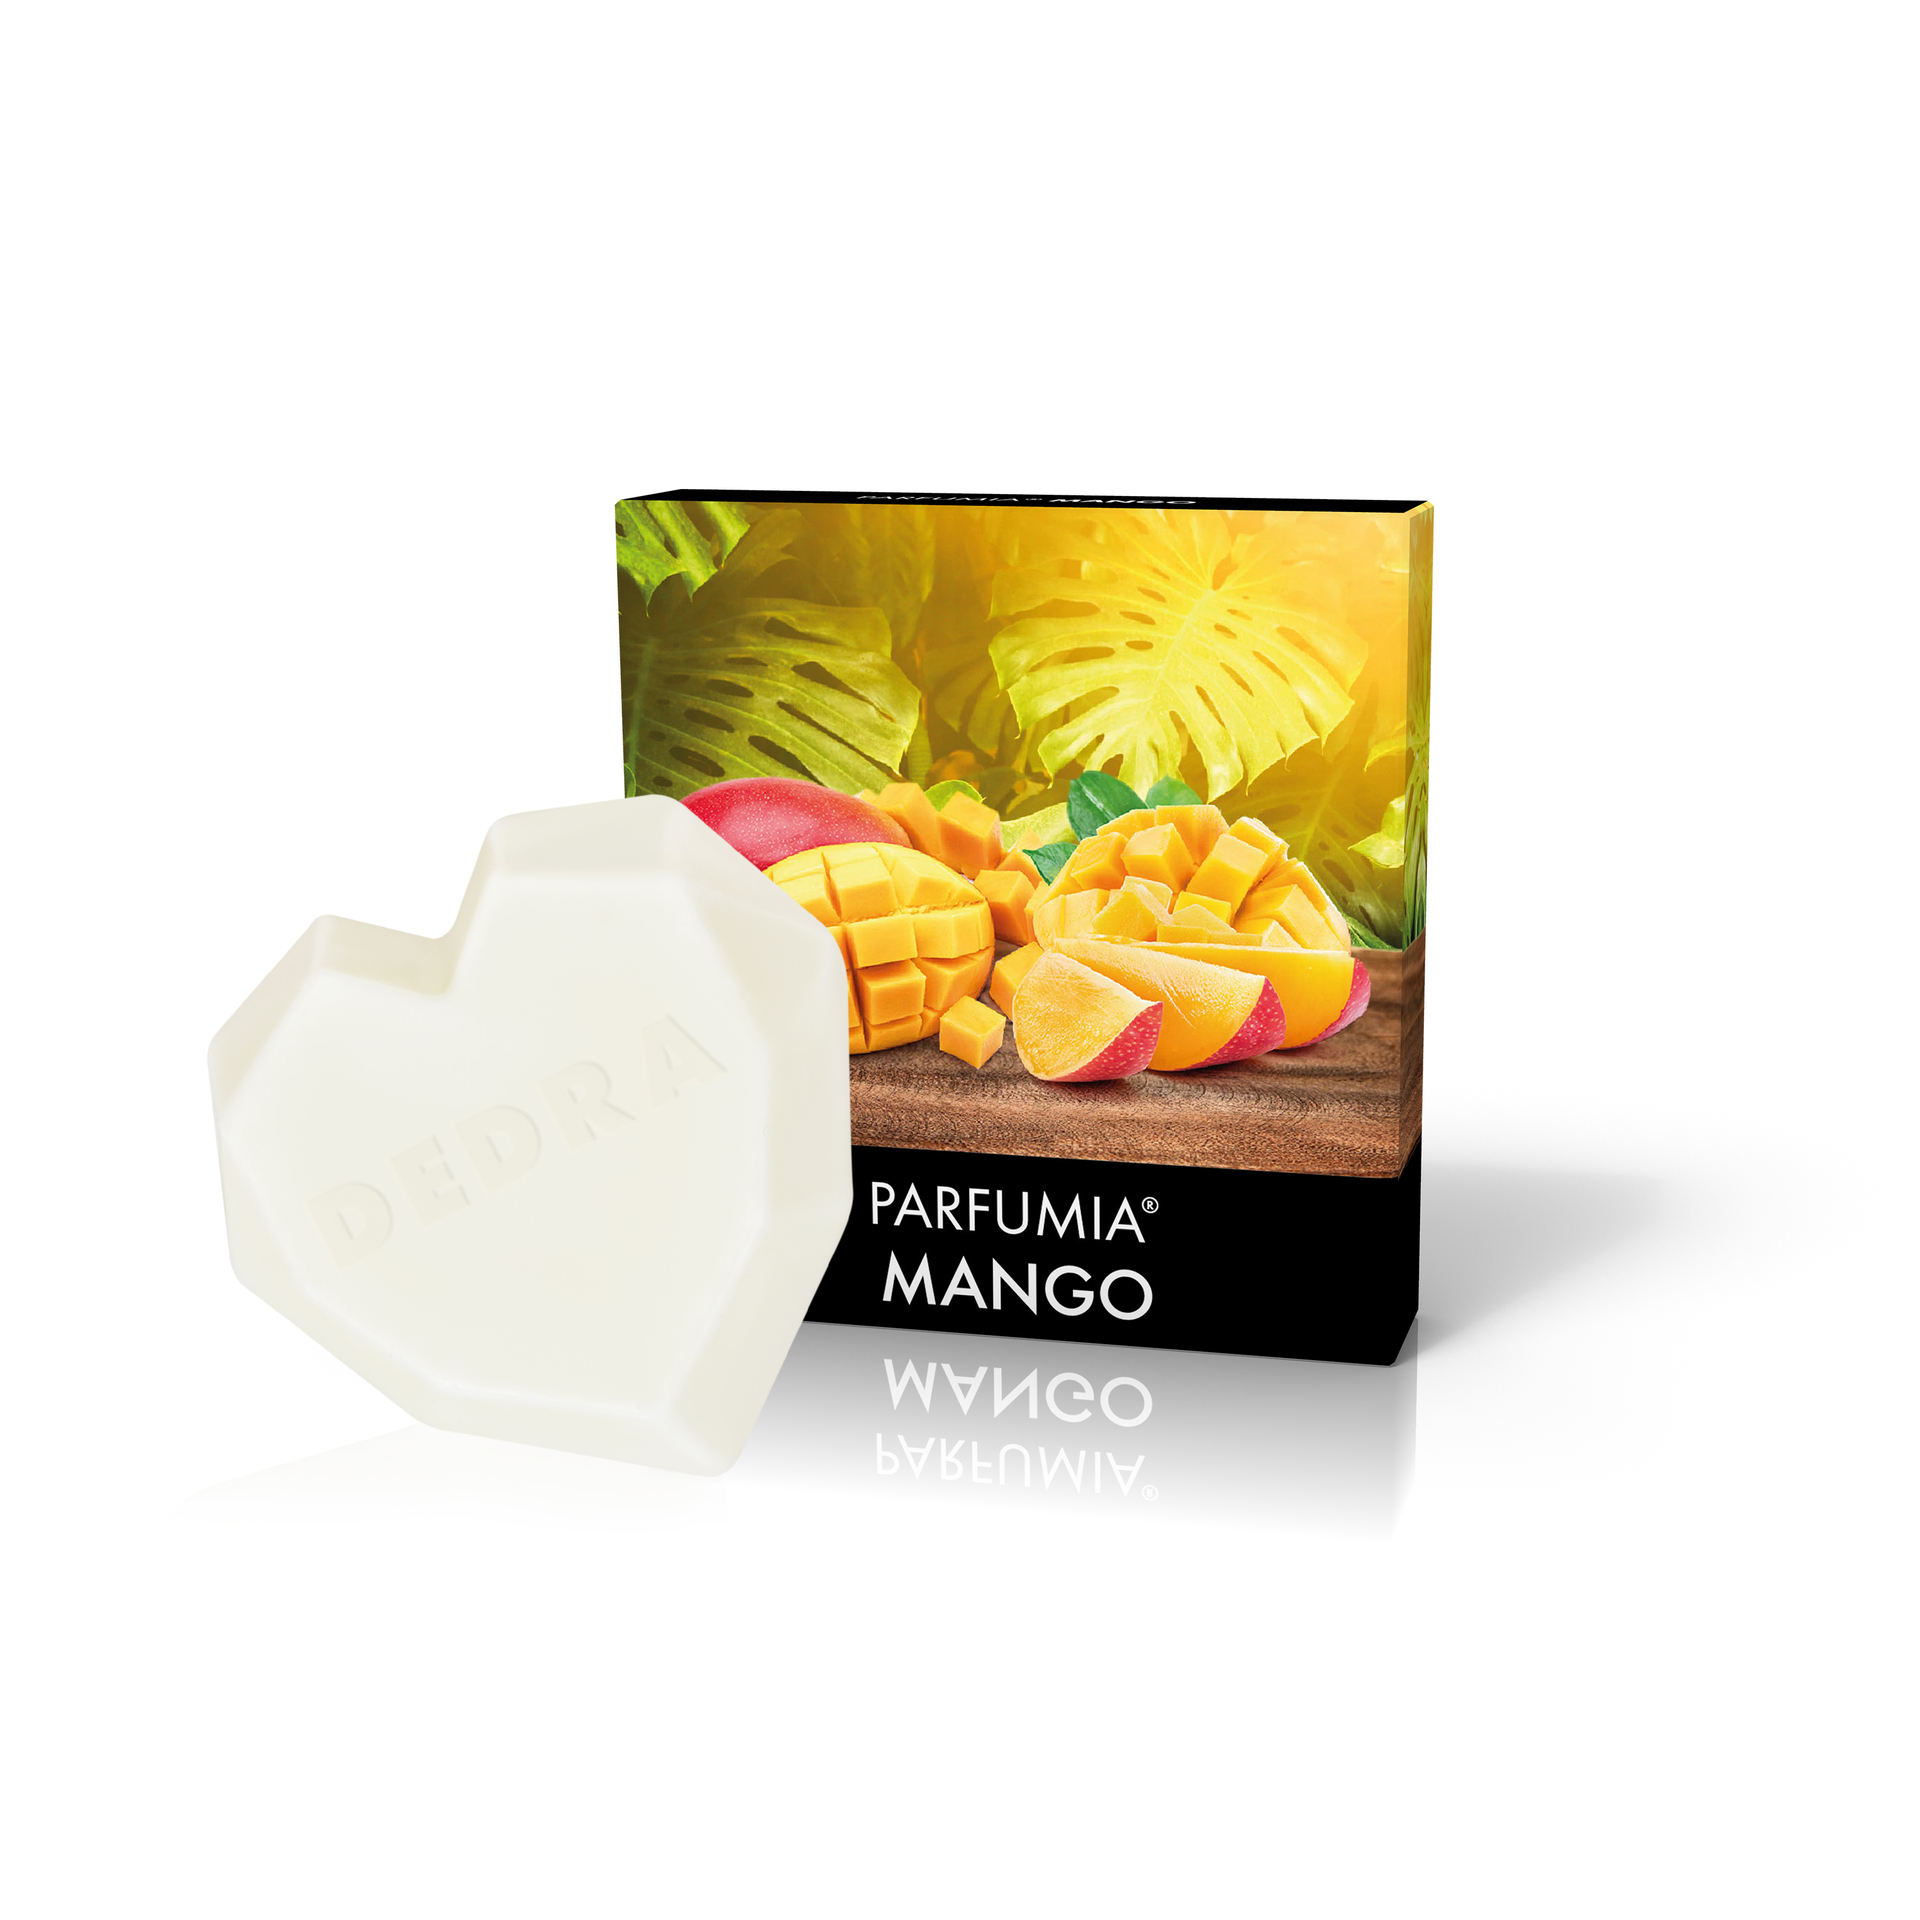 Vonný sójový EKO vosk Parfumia Mango